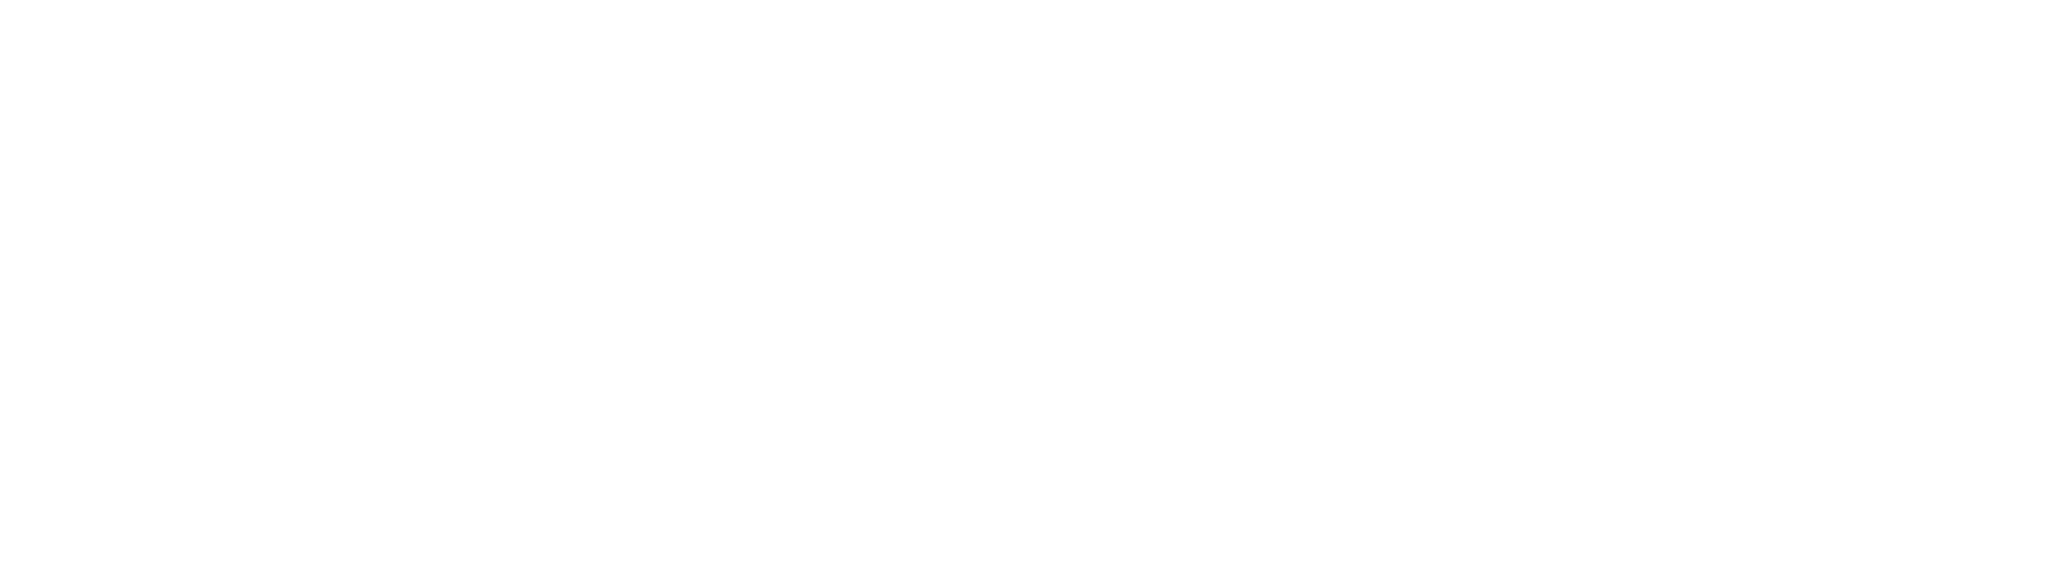 logo cours2conduite.com